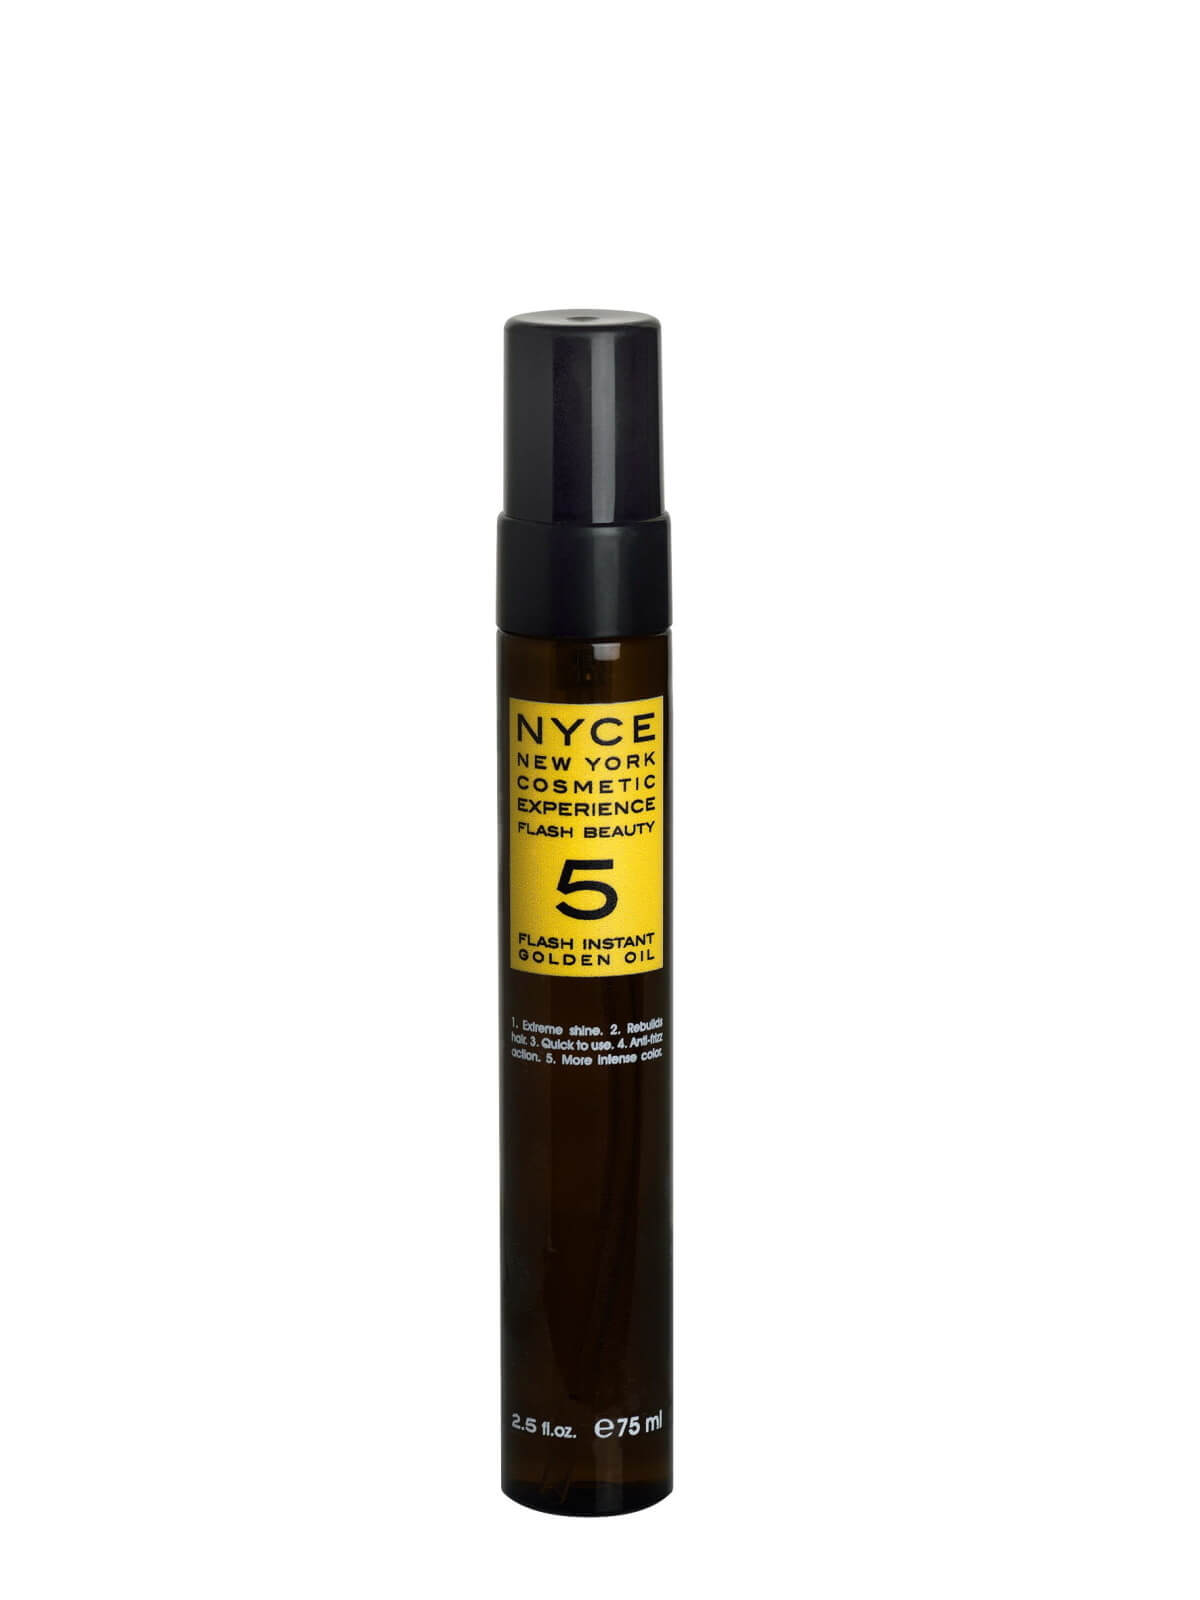 NYCE Regeneračný olej na vlasy (Flash Instant Gold en Oil) 75 ml